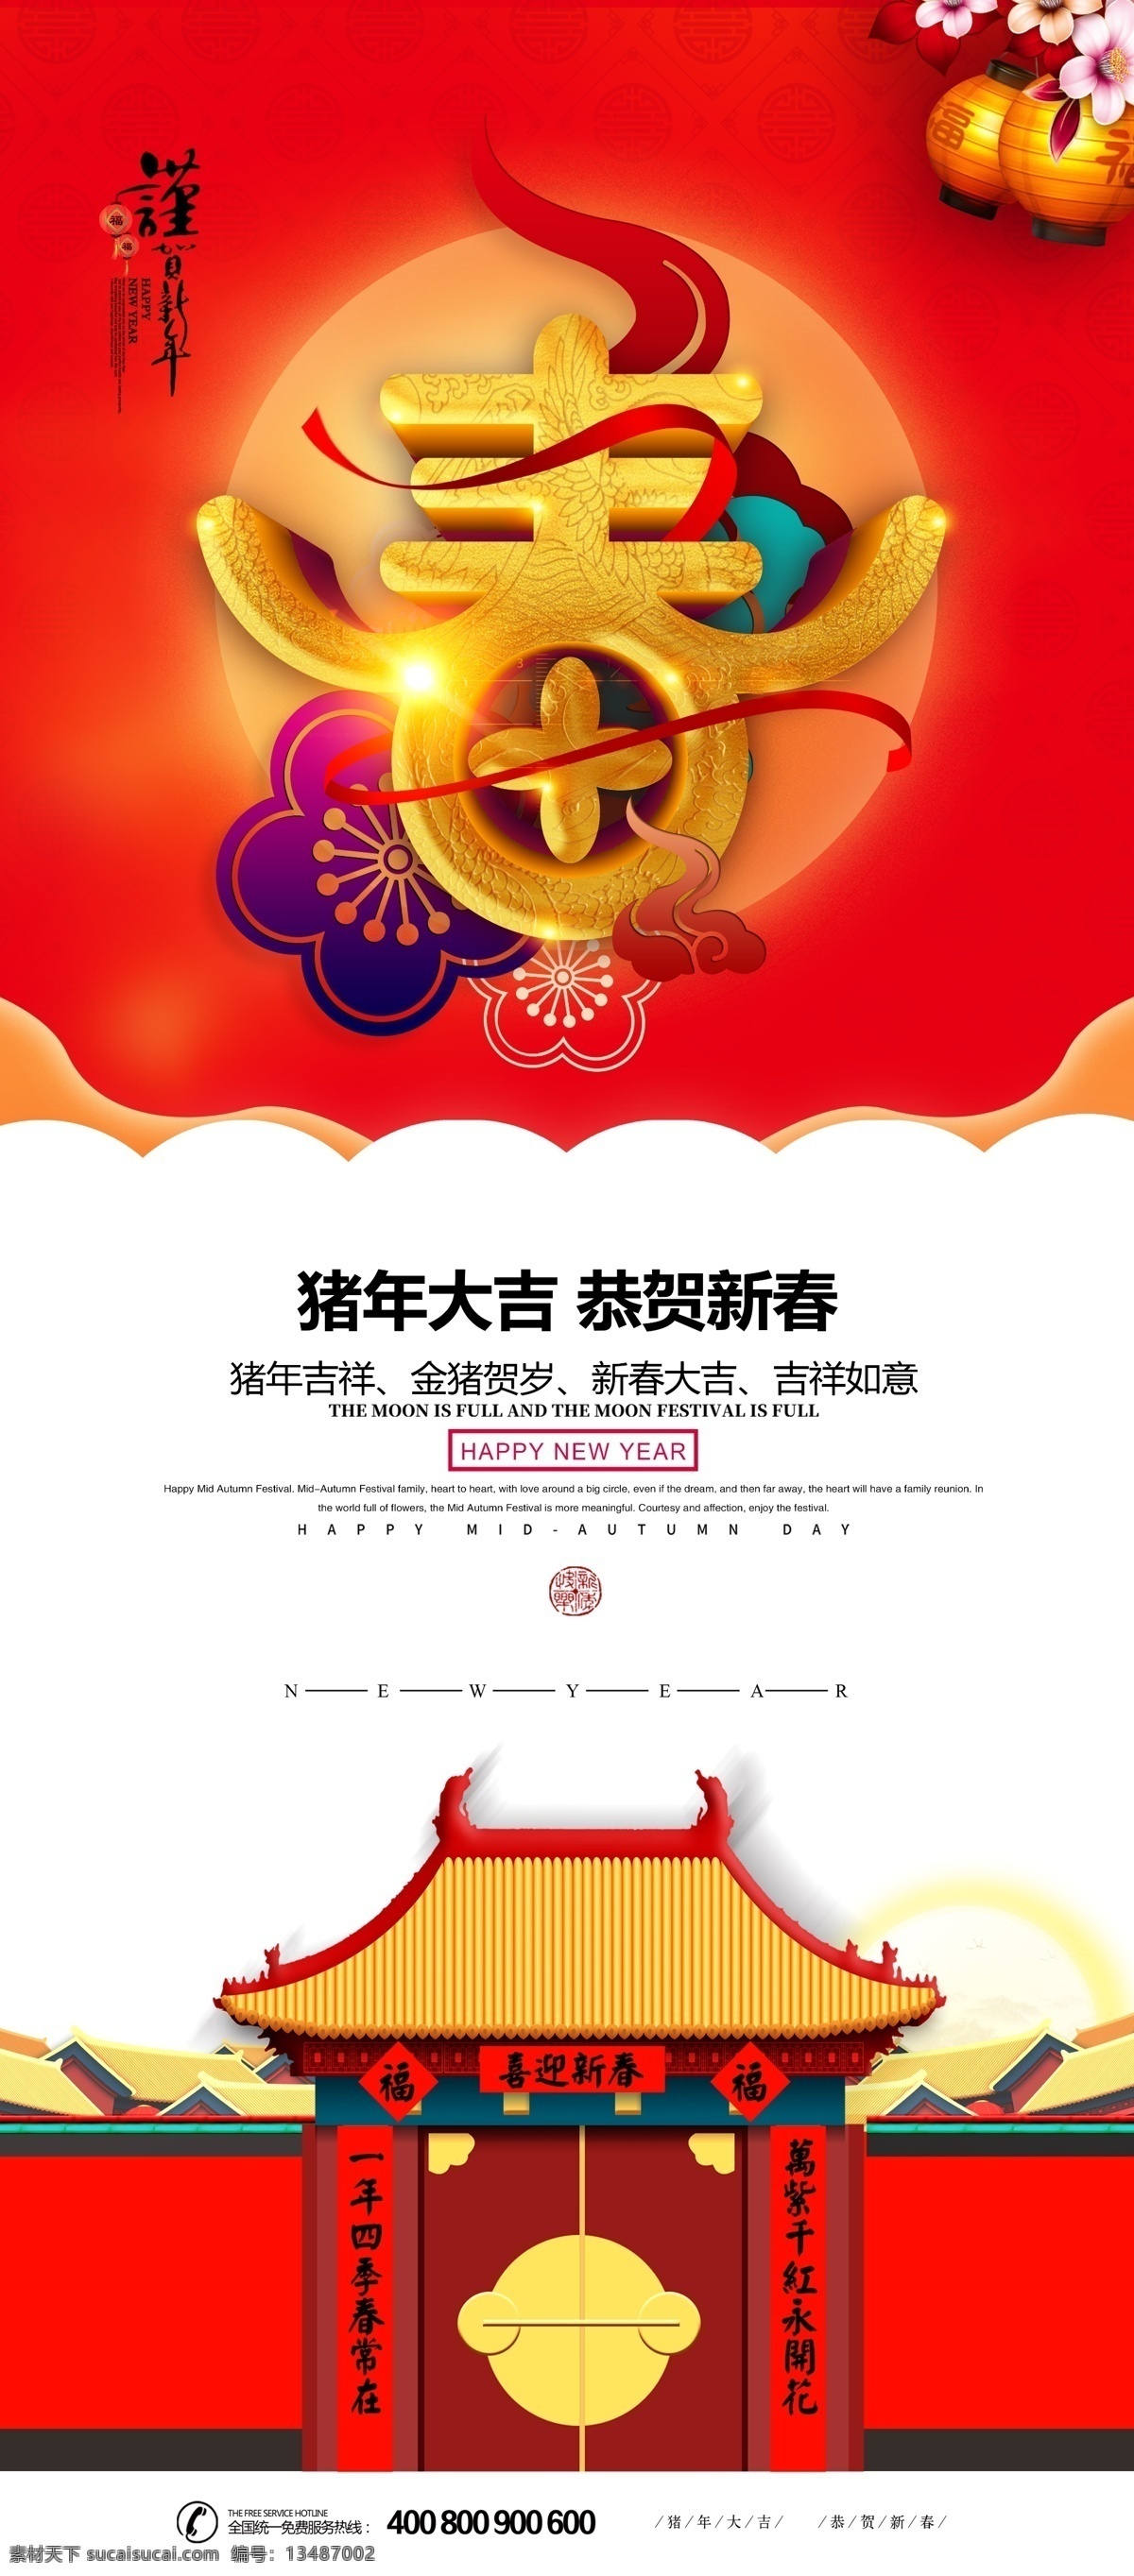 红色 中 国风 新年 迎春 促销 易拉宝 展架 展板 易拉宝模板 x展架设计 公司x展架 企业 模板 创意展架设计 时尚展架设计 宣传广告 画面设计 x 免费 免费模板 免费素材 平面素材 红色中国风